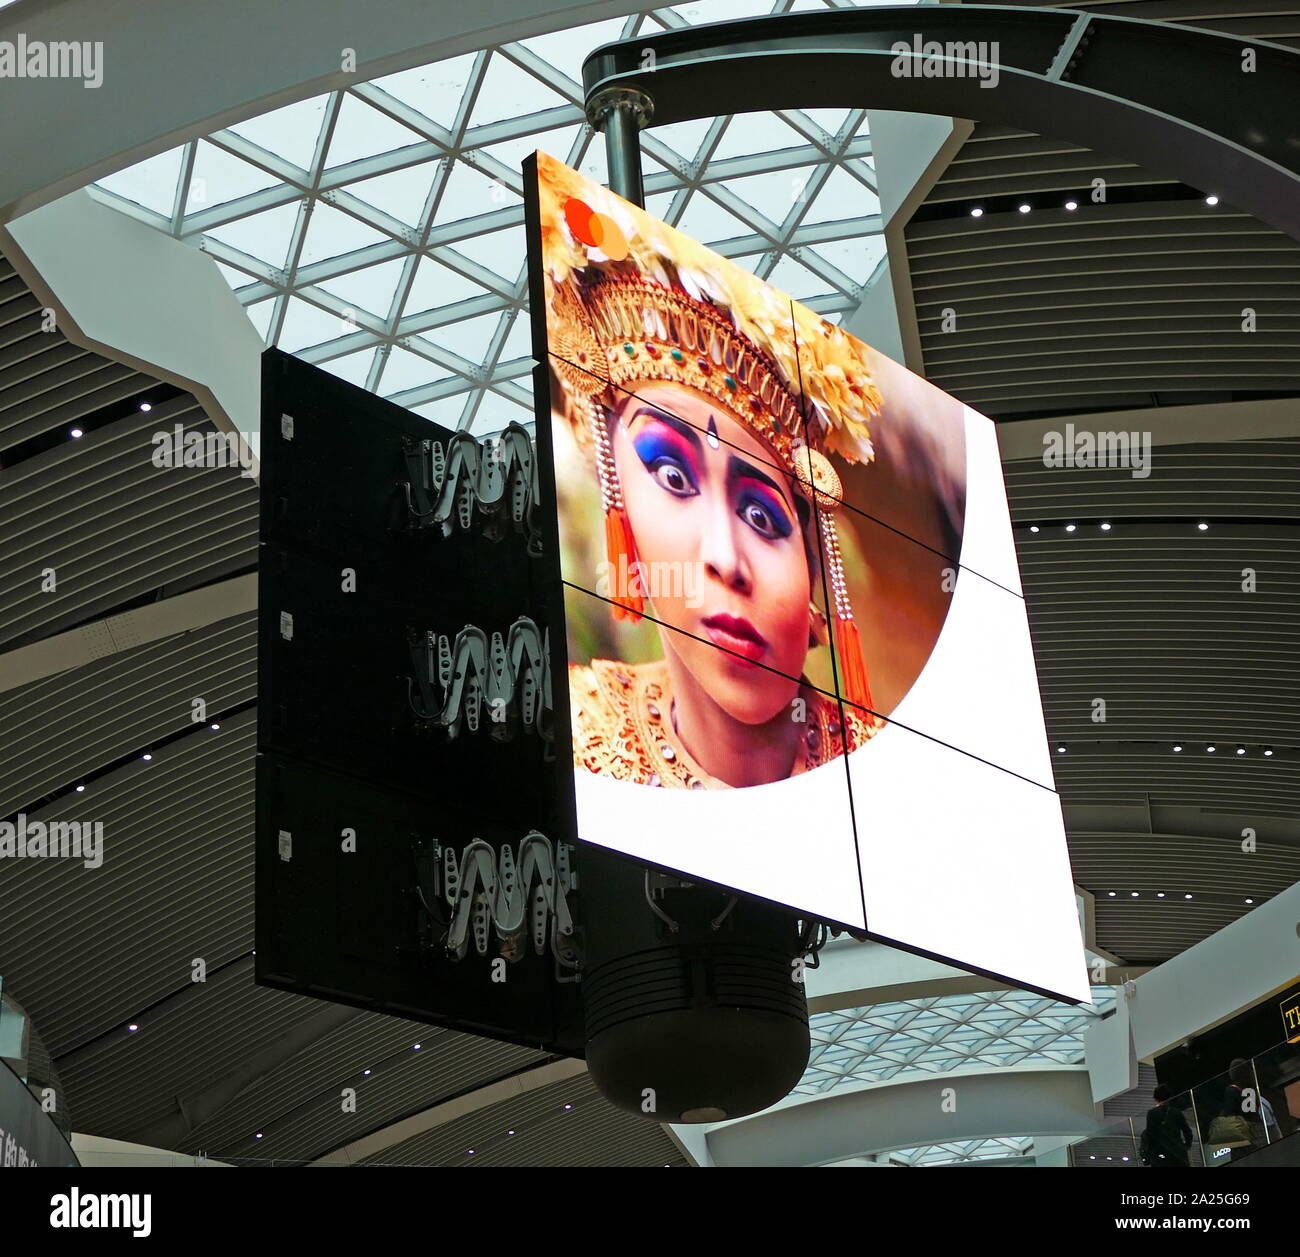 Eine Bank von digitalen Fernsehen in der Abflughalle von Rom - Fiumicino International Airport. Die Bildschirme angezeigt werden sequentielle Werbung auf einem regelmäßigen Zyklus, in dem beide Anzeigen und Bilder verschieben und neu ausrichten können mehrere oder gruppiert Images zu erstellen, zu drehen. Stockfoto